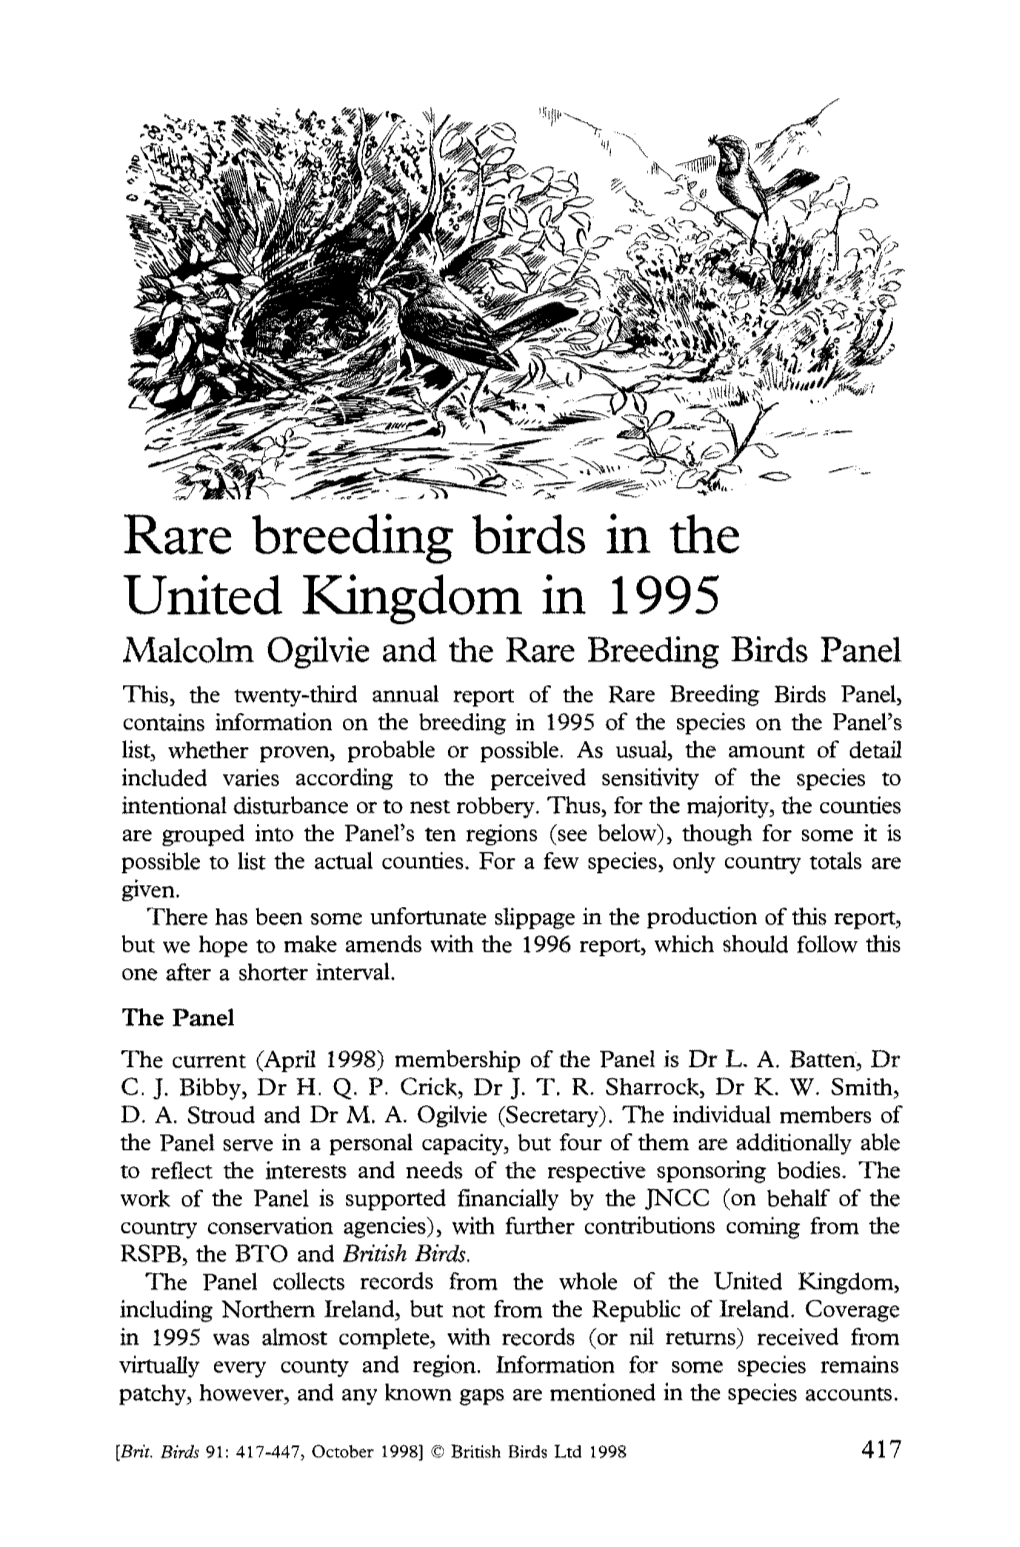 Rare Breeding Birds in the United Kingdom in 1995